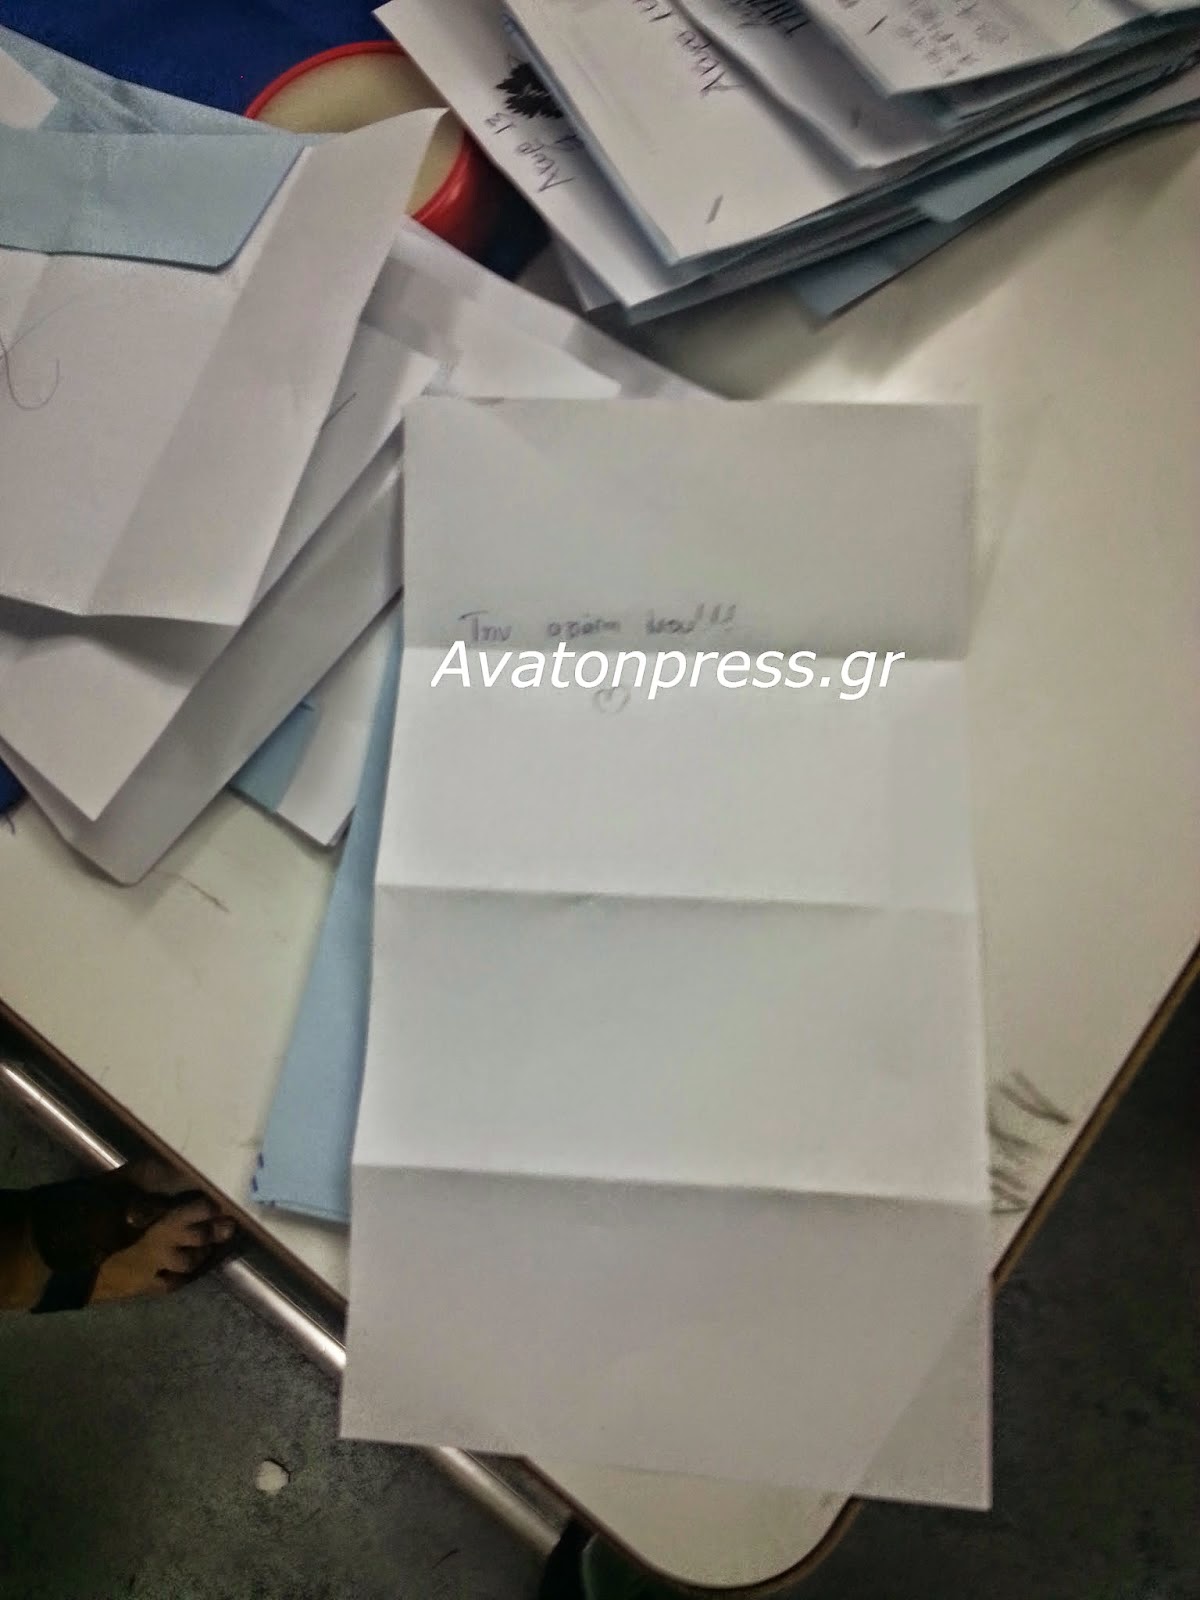 Οι πολίτες της Περιφέρειας Κεντρικής Μακεδονίας έδωσαν... τα ρέστα τους! Δείτε τι ψήφους έριξαν στη κάλπη [photos] - Φωτογραφία 4